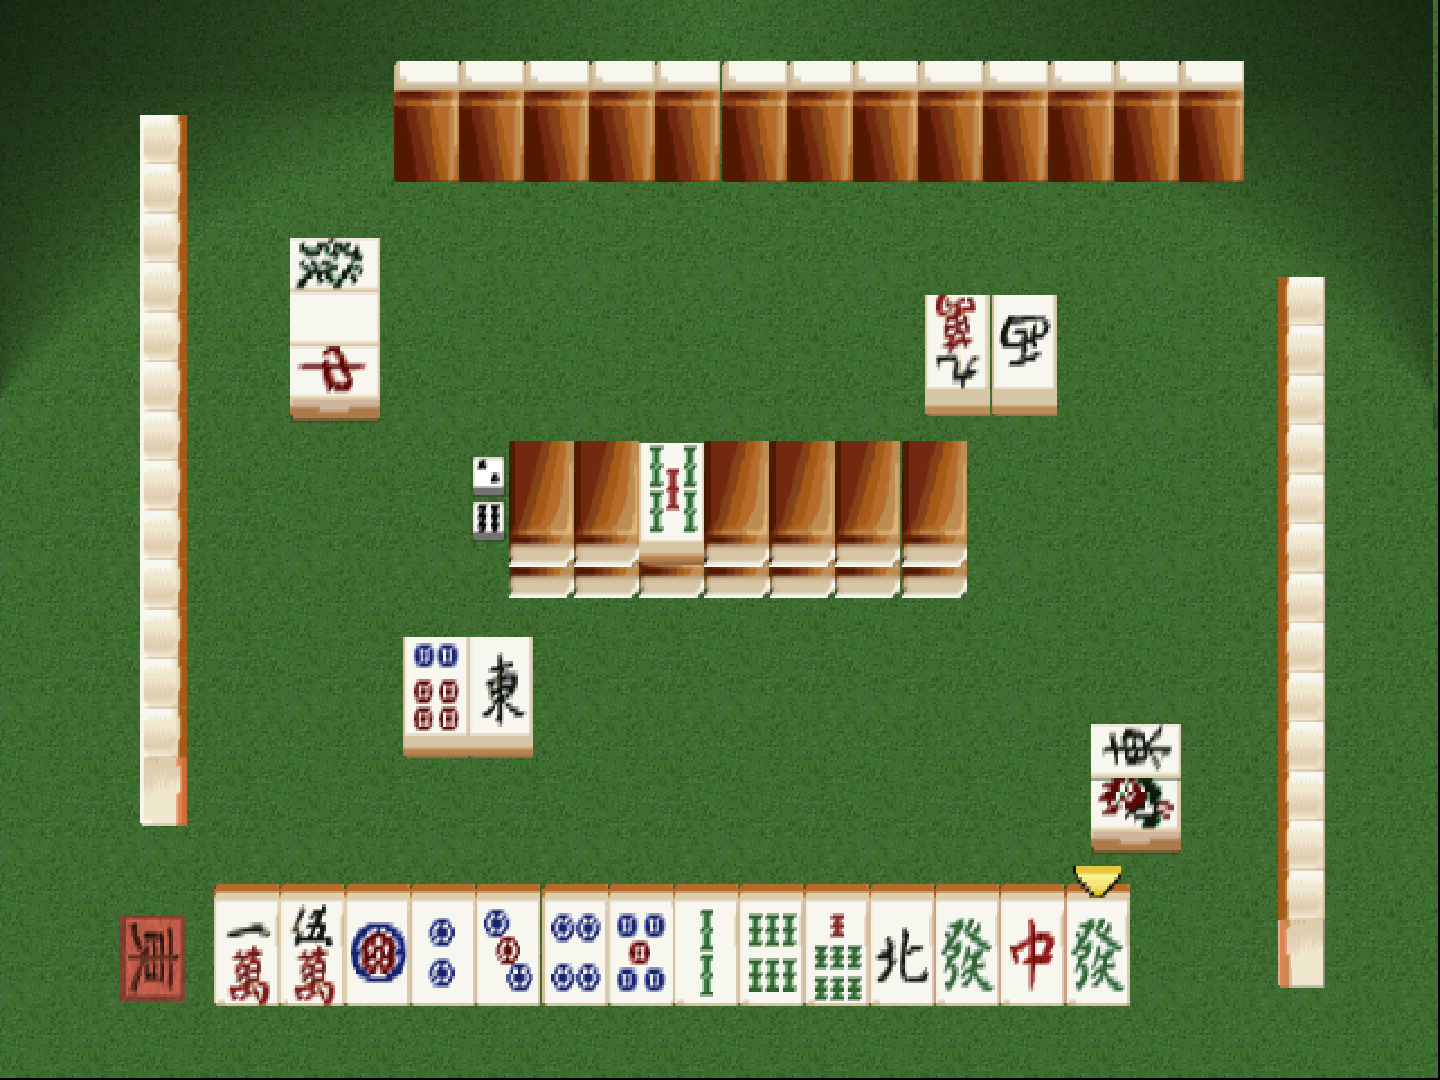 Pro Mahjong Tsuwamono 64: Jansou Battle ni Chousen